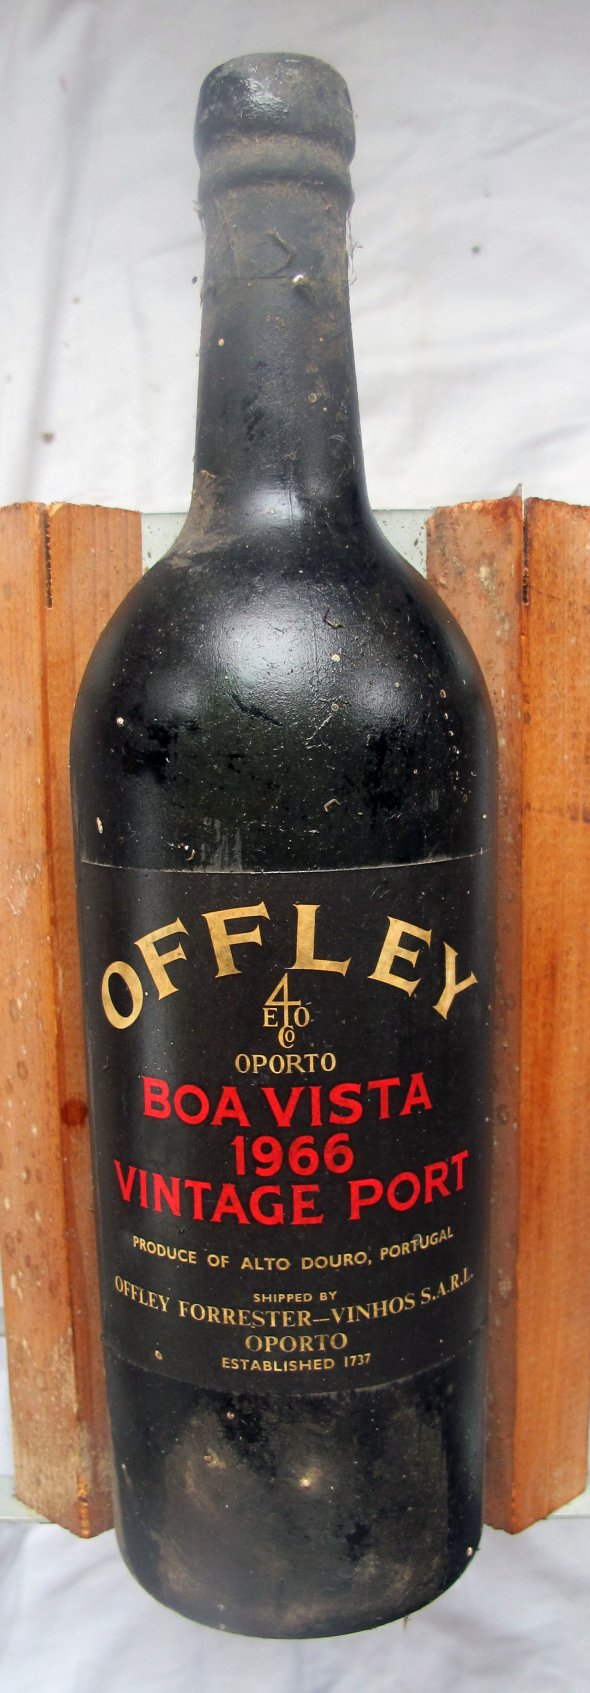 Offley, Boa Vista, Port, Portugal, DOC